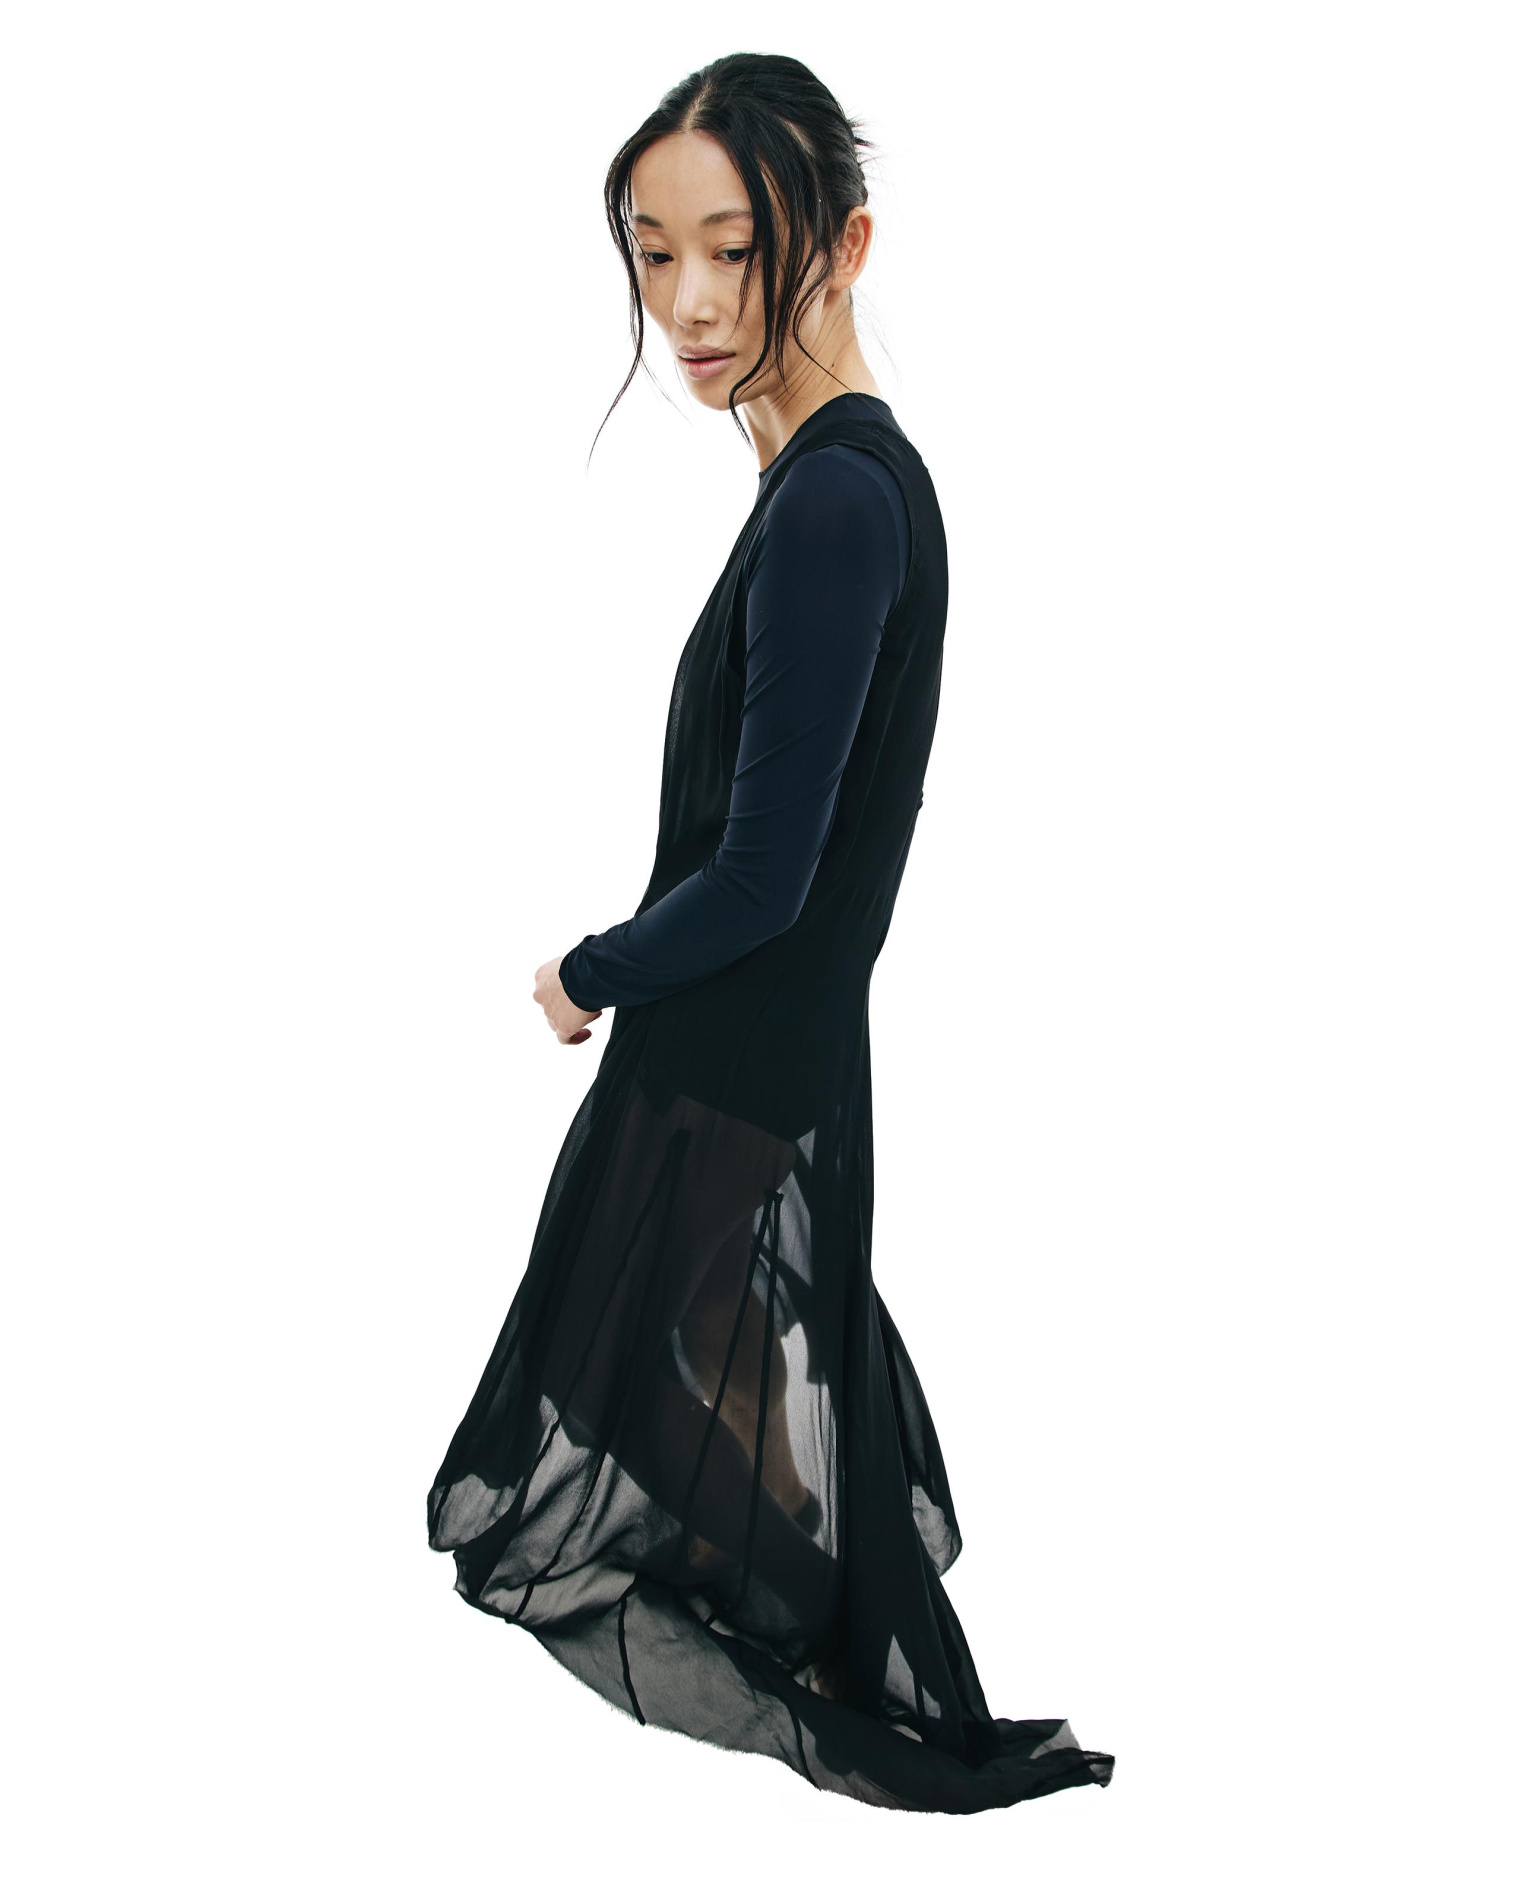 Ann Demeulemeester Translucent Elongated Black Dress